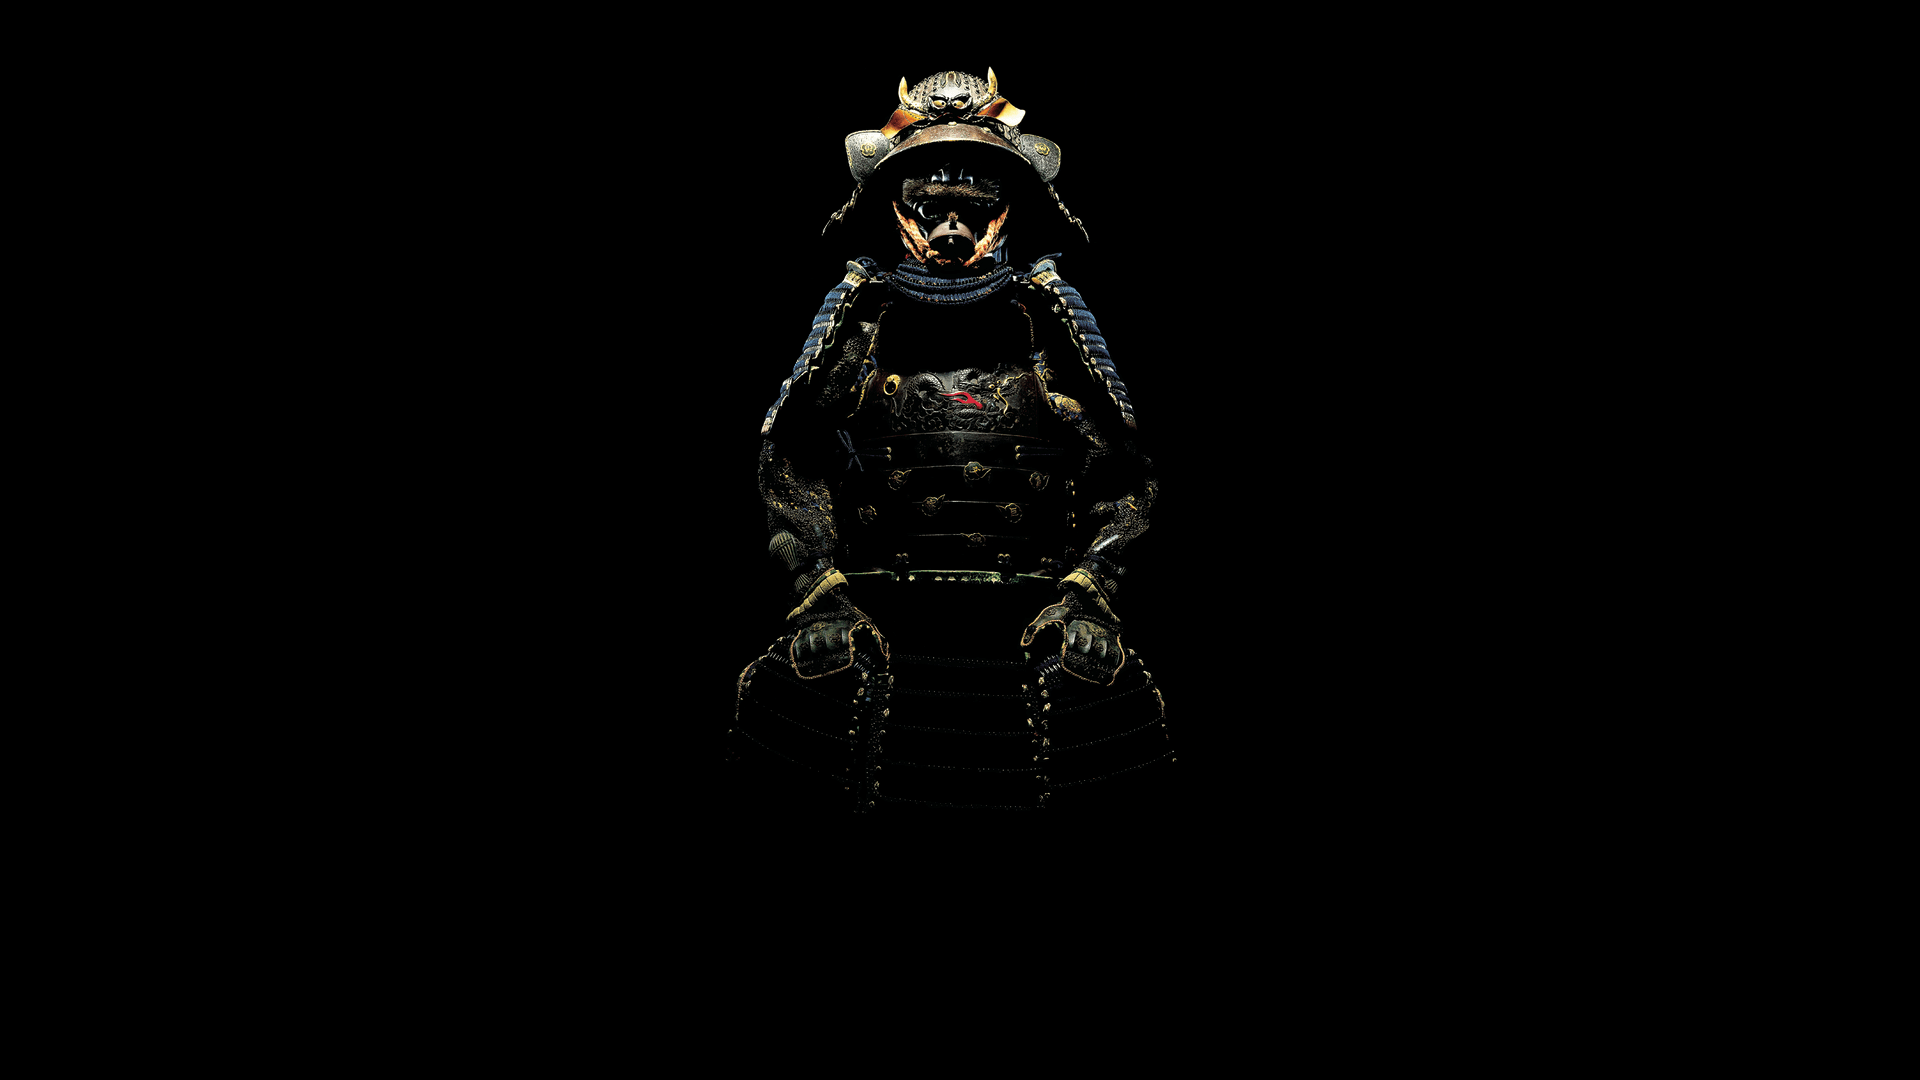 Samurai Desktop Image Wallpapers